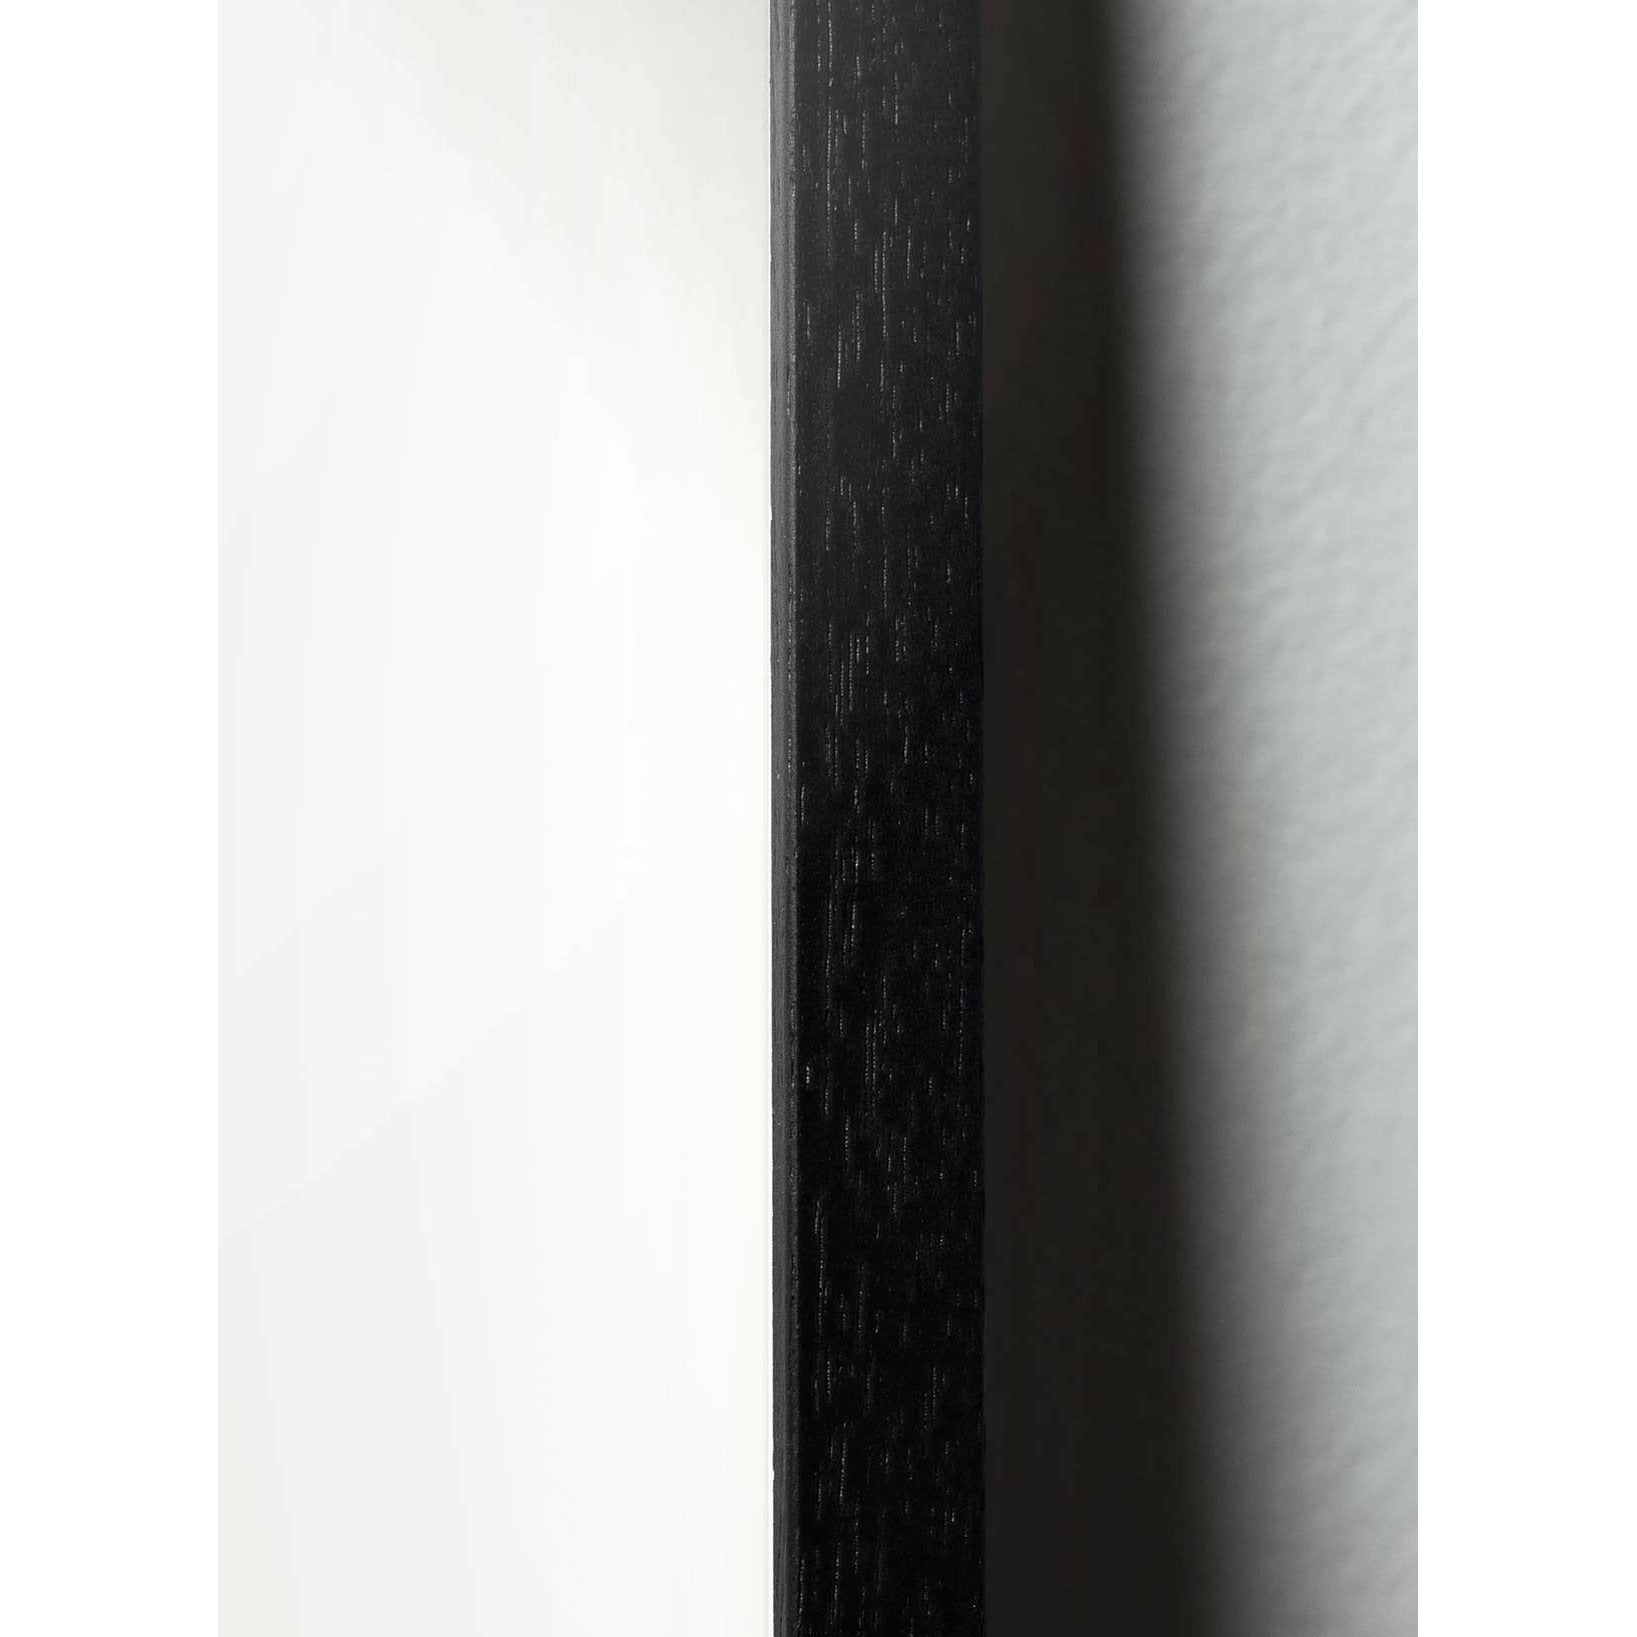 Poster di linea formica da un'ant di fantasia, cornice in legno laccato nero 70x100 cm, sfondo bianco